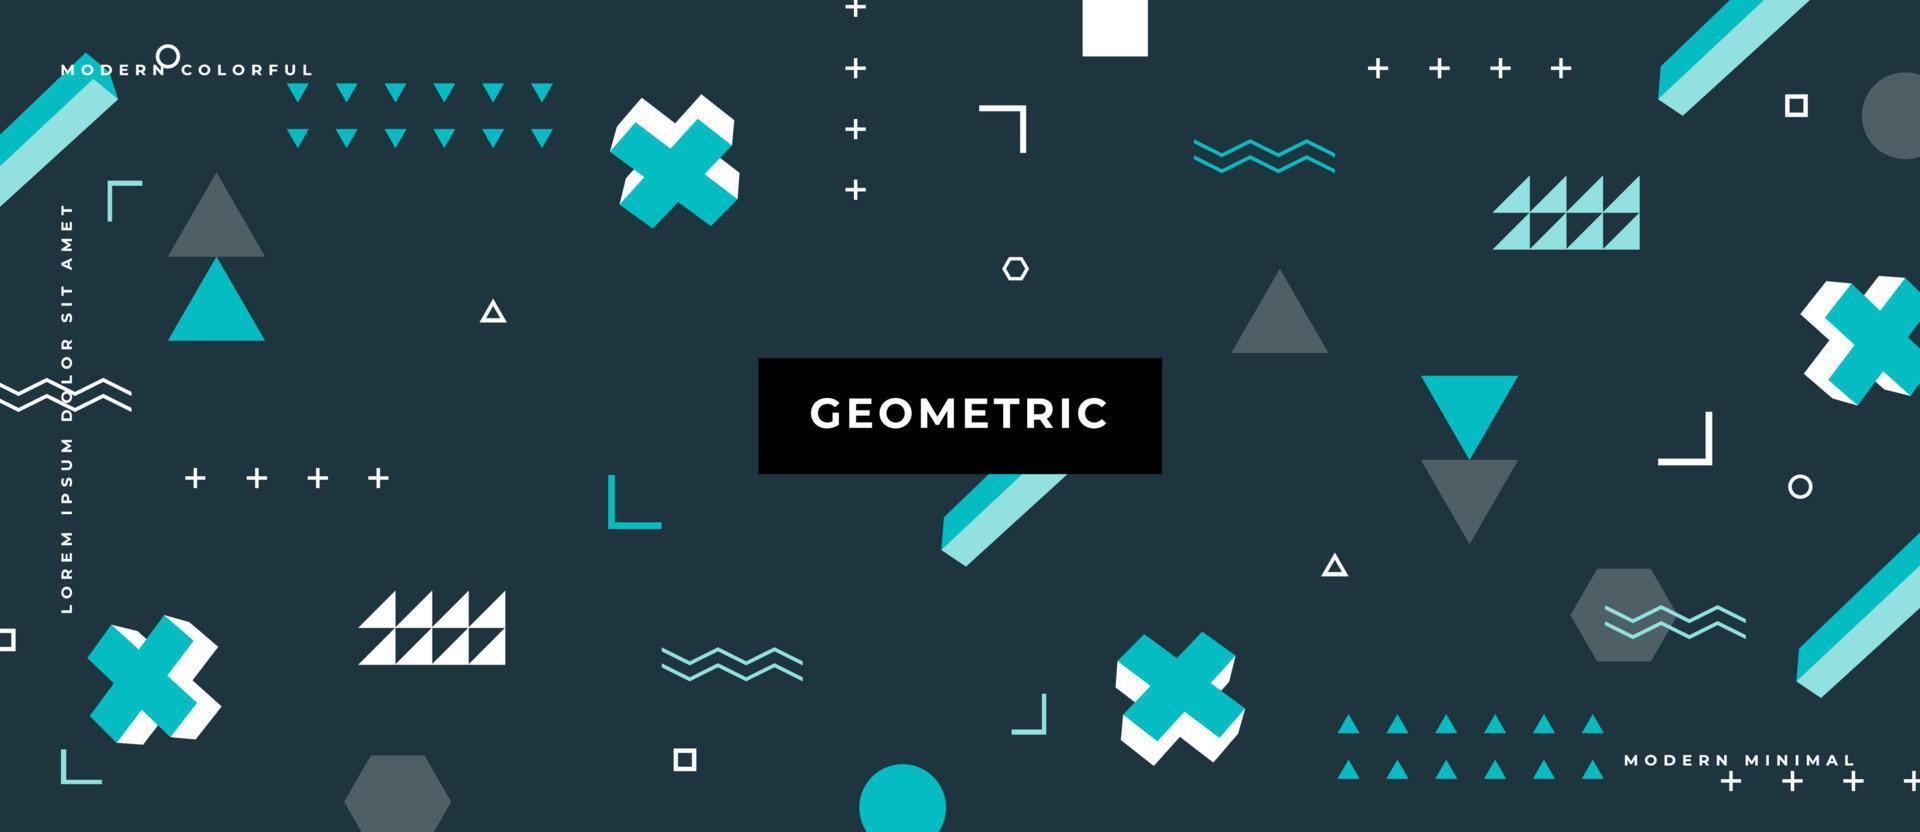 Patrones de formas geométricas abstractas de color de Memphis. elementos geométricos simples de triángulo, línea, círculo en estilo memphis de moda hipster. vector